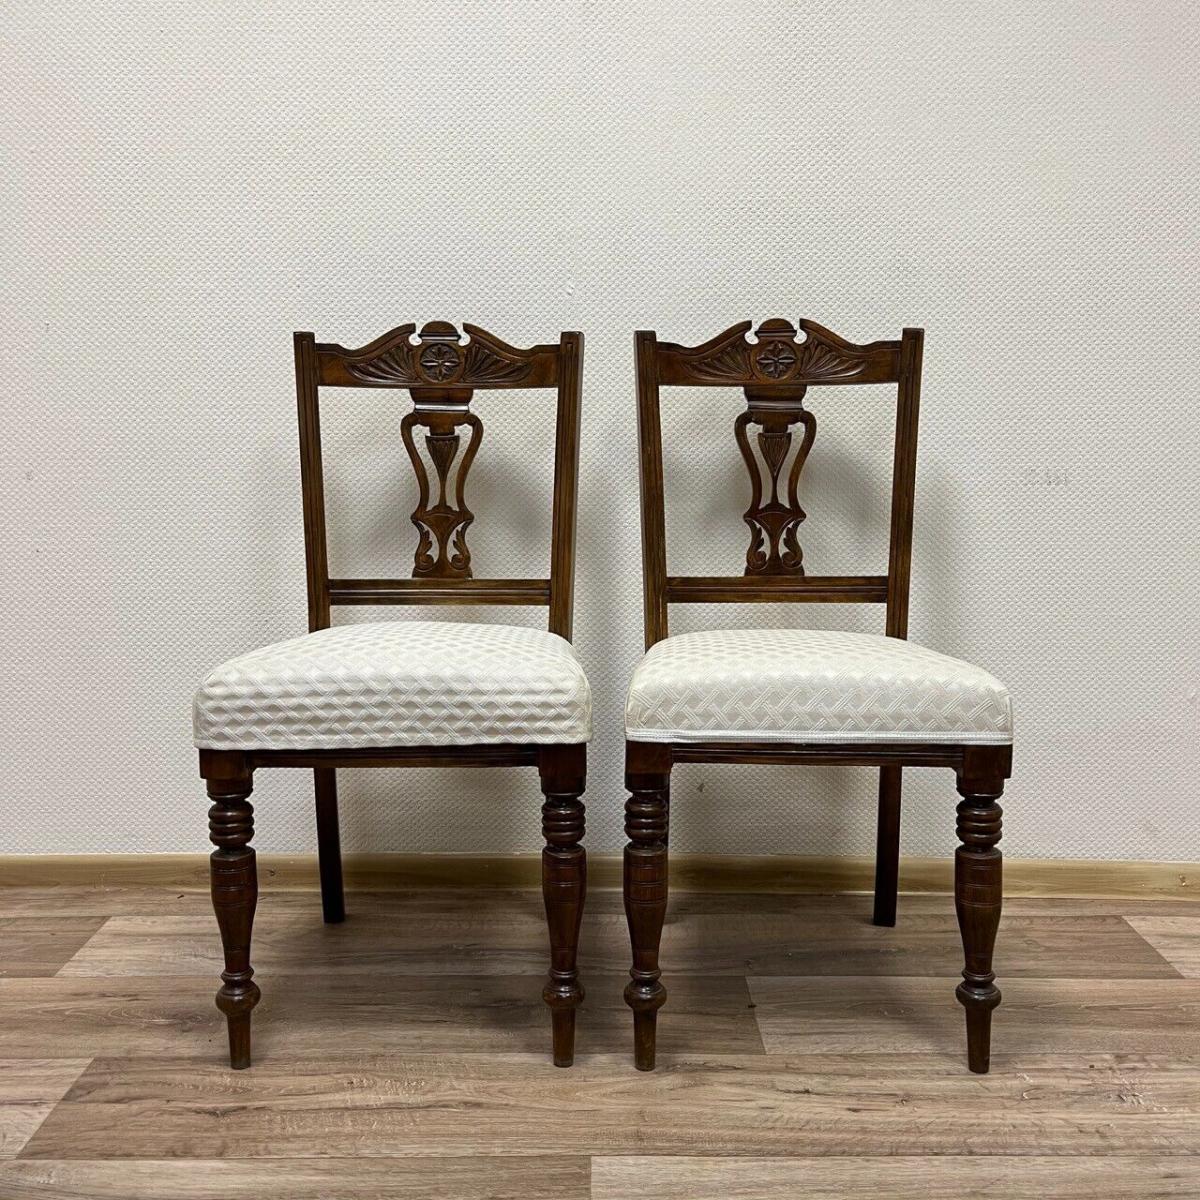 6 Stühle | Nussbaum | Antik